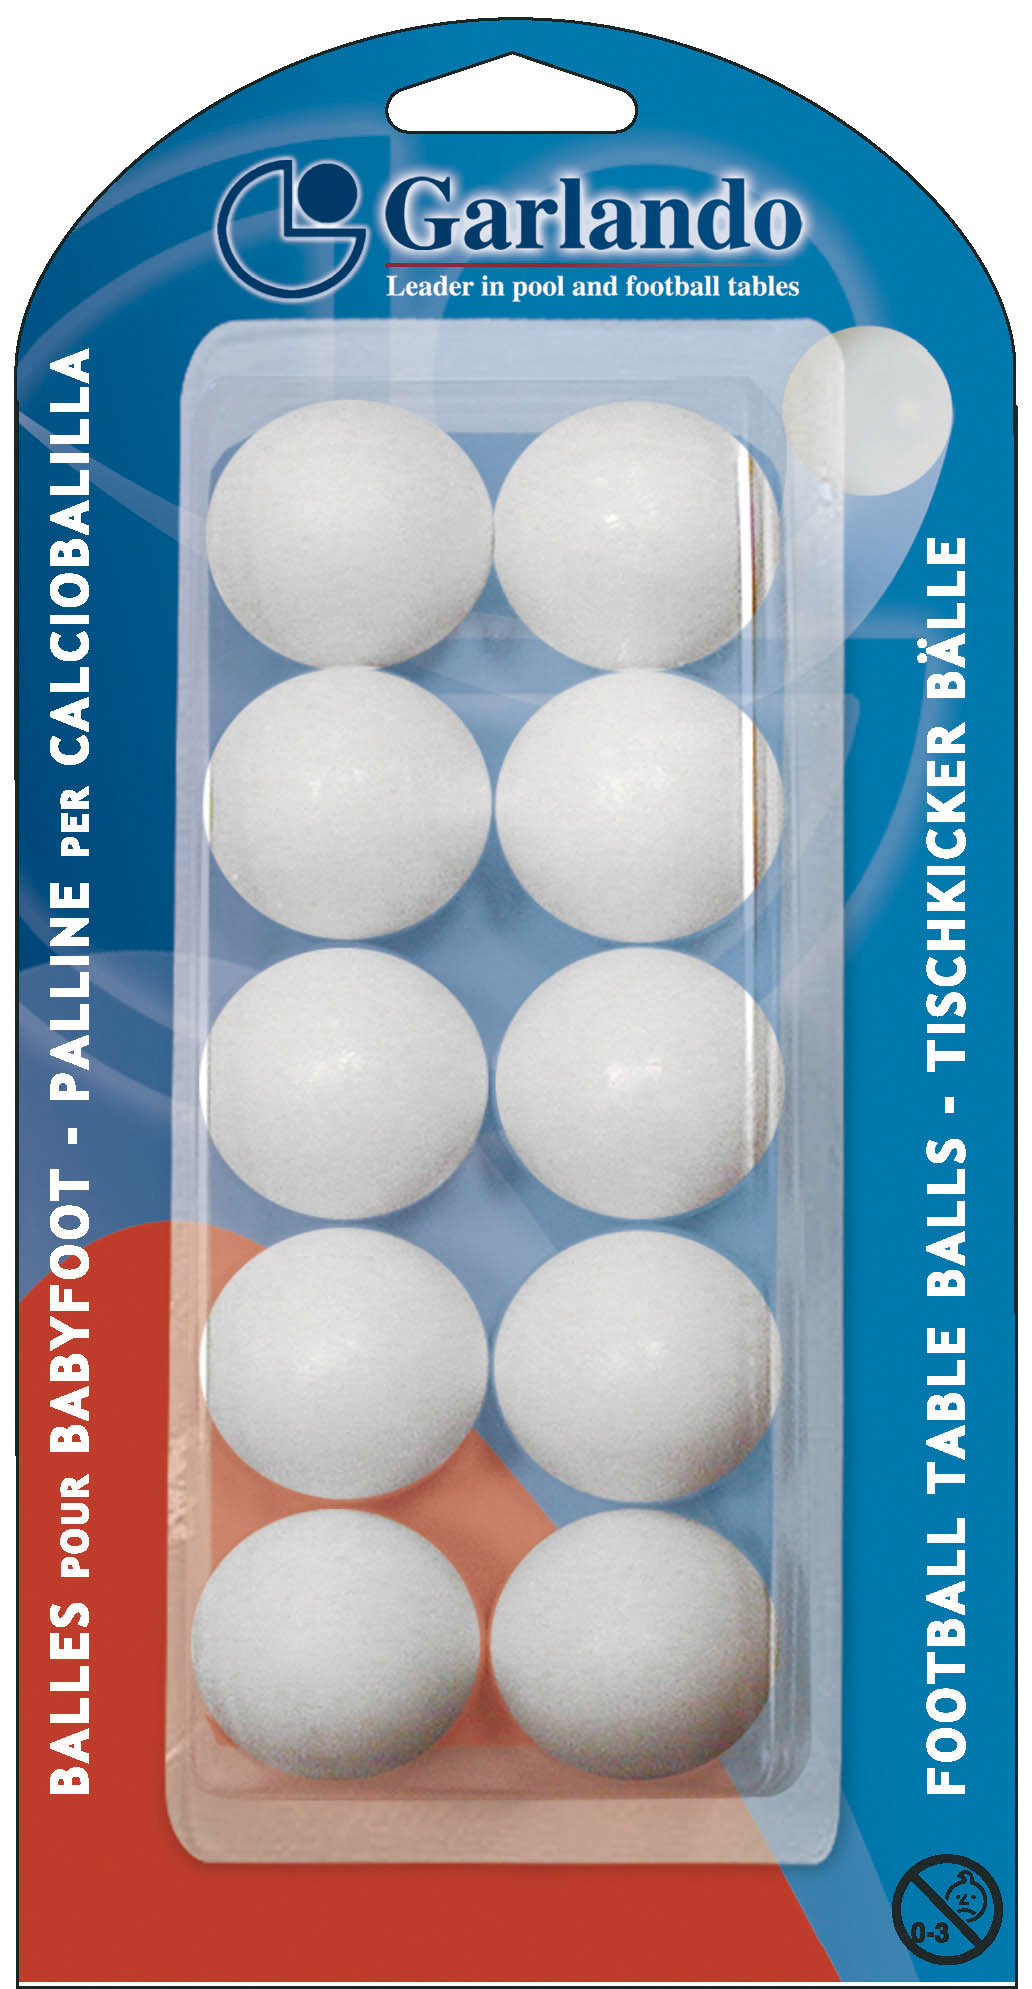 Blister Pack of 10 White Standard Balls dia 33.1mm